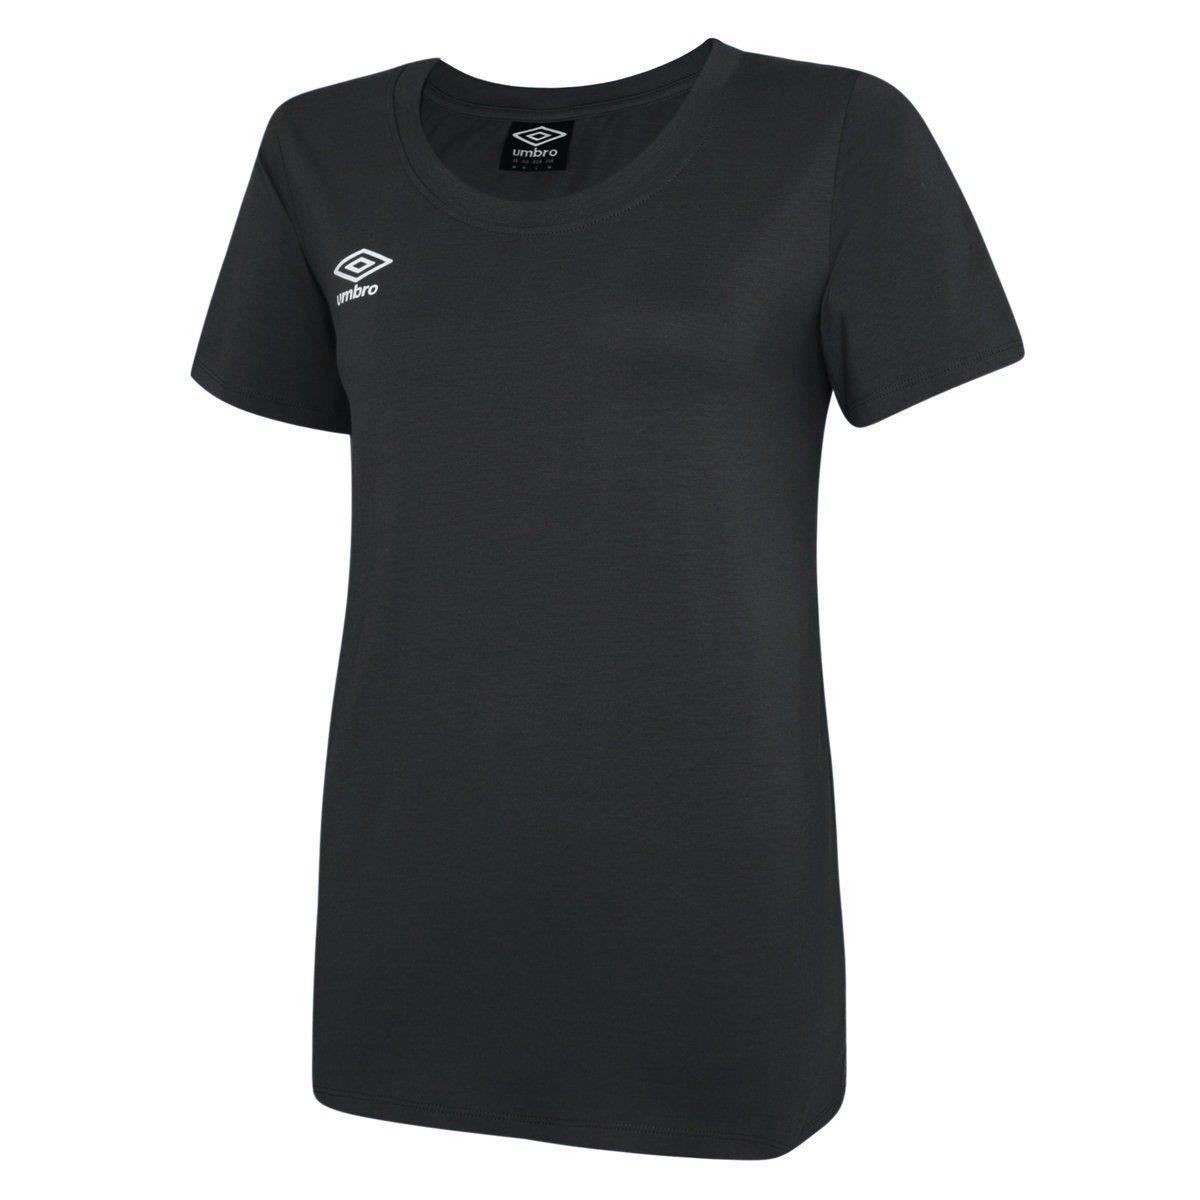 Club Leisure Tshirt Damen Schwarz XL von Umbro